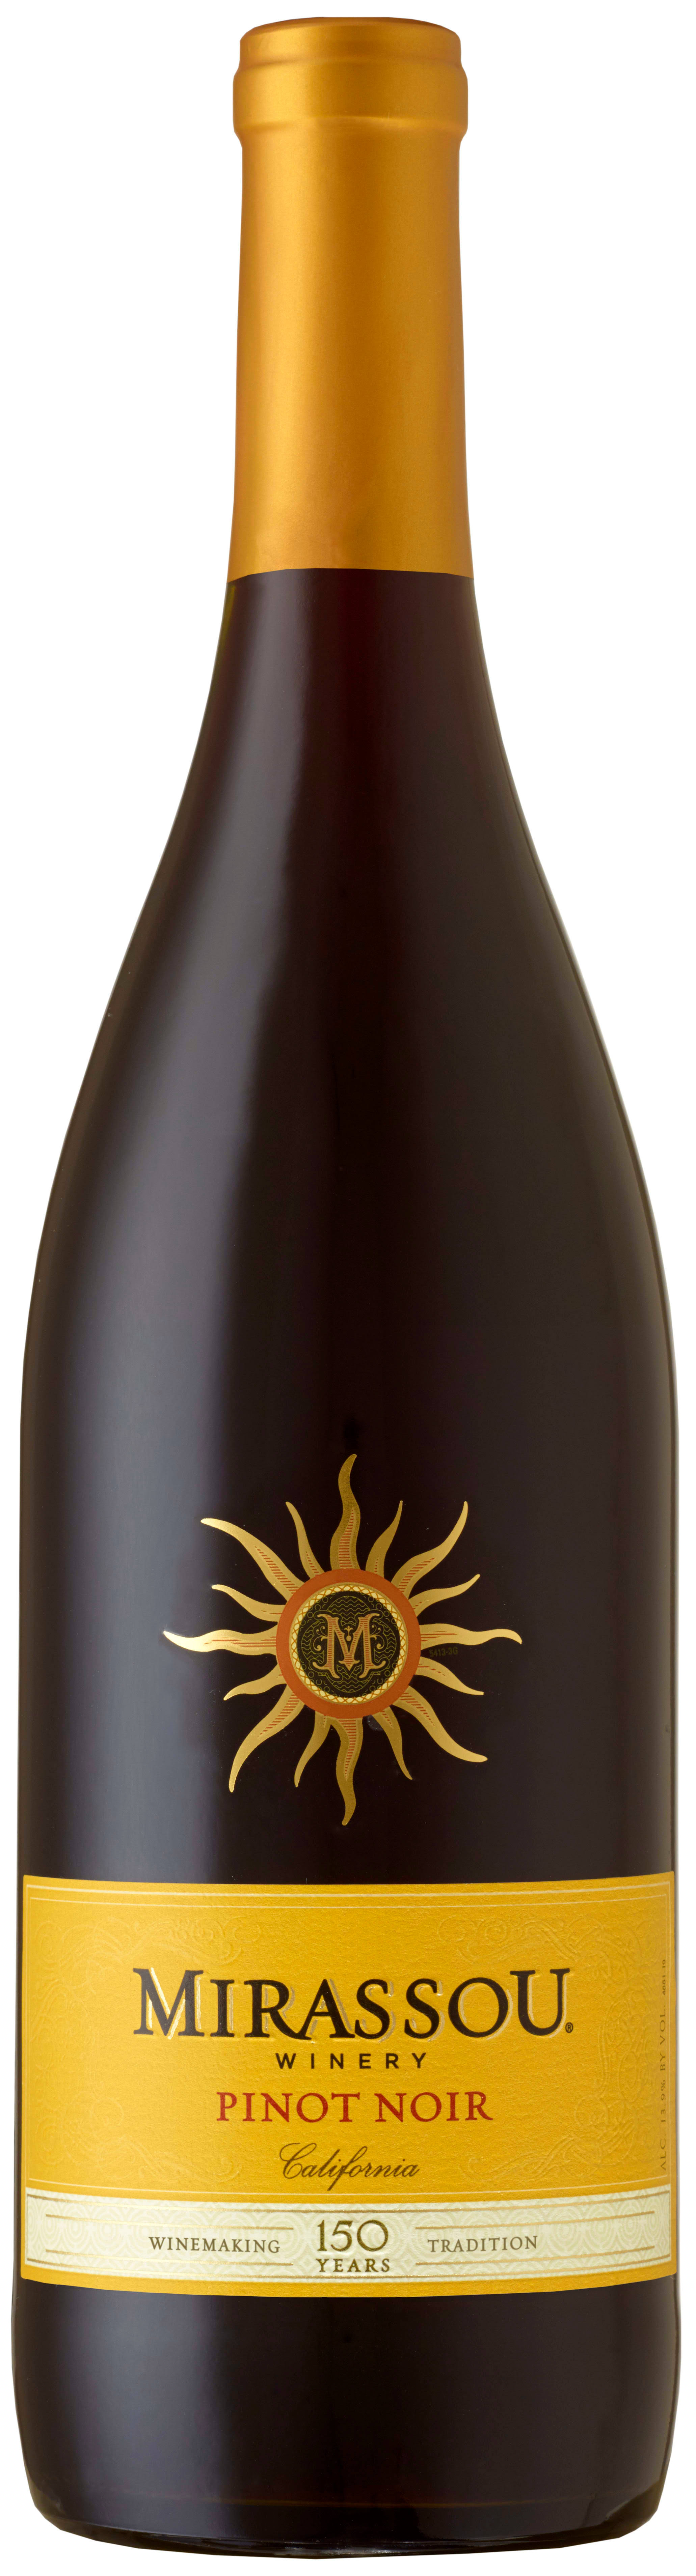 Mirassou Pinot Noir, California, 2016 - 750 ml